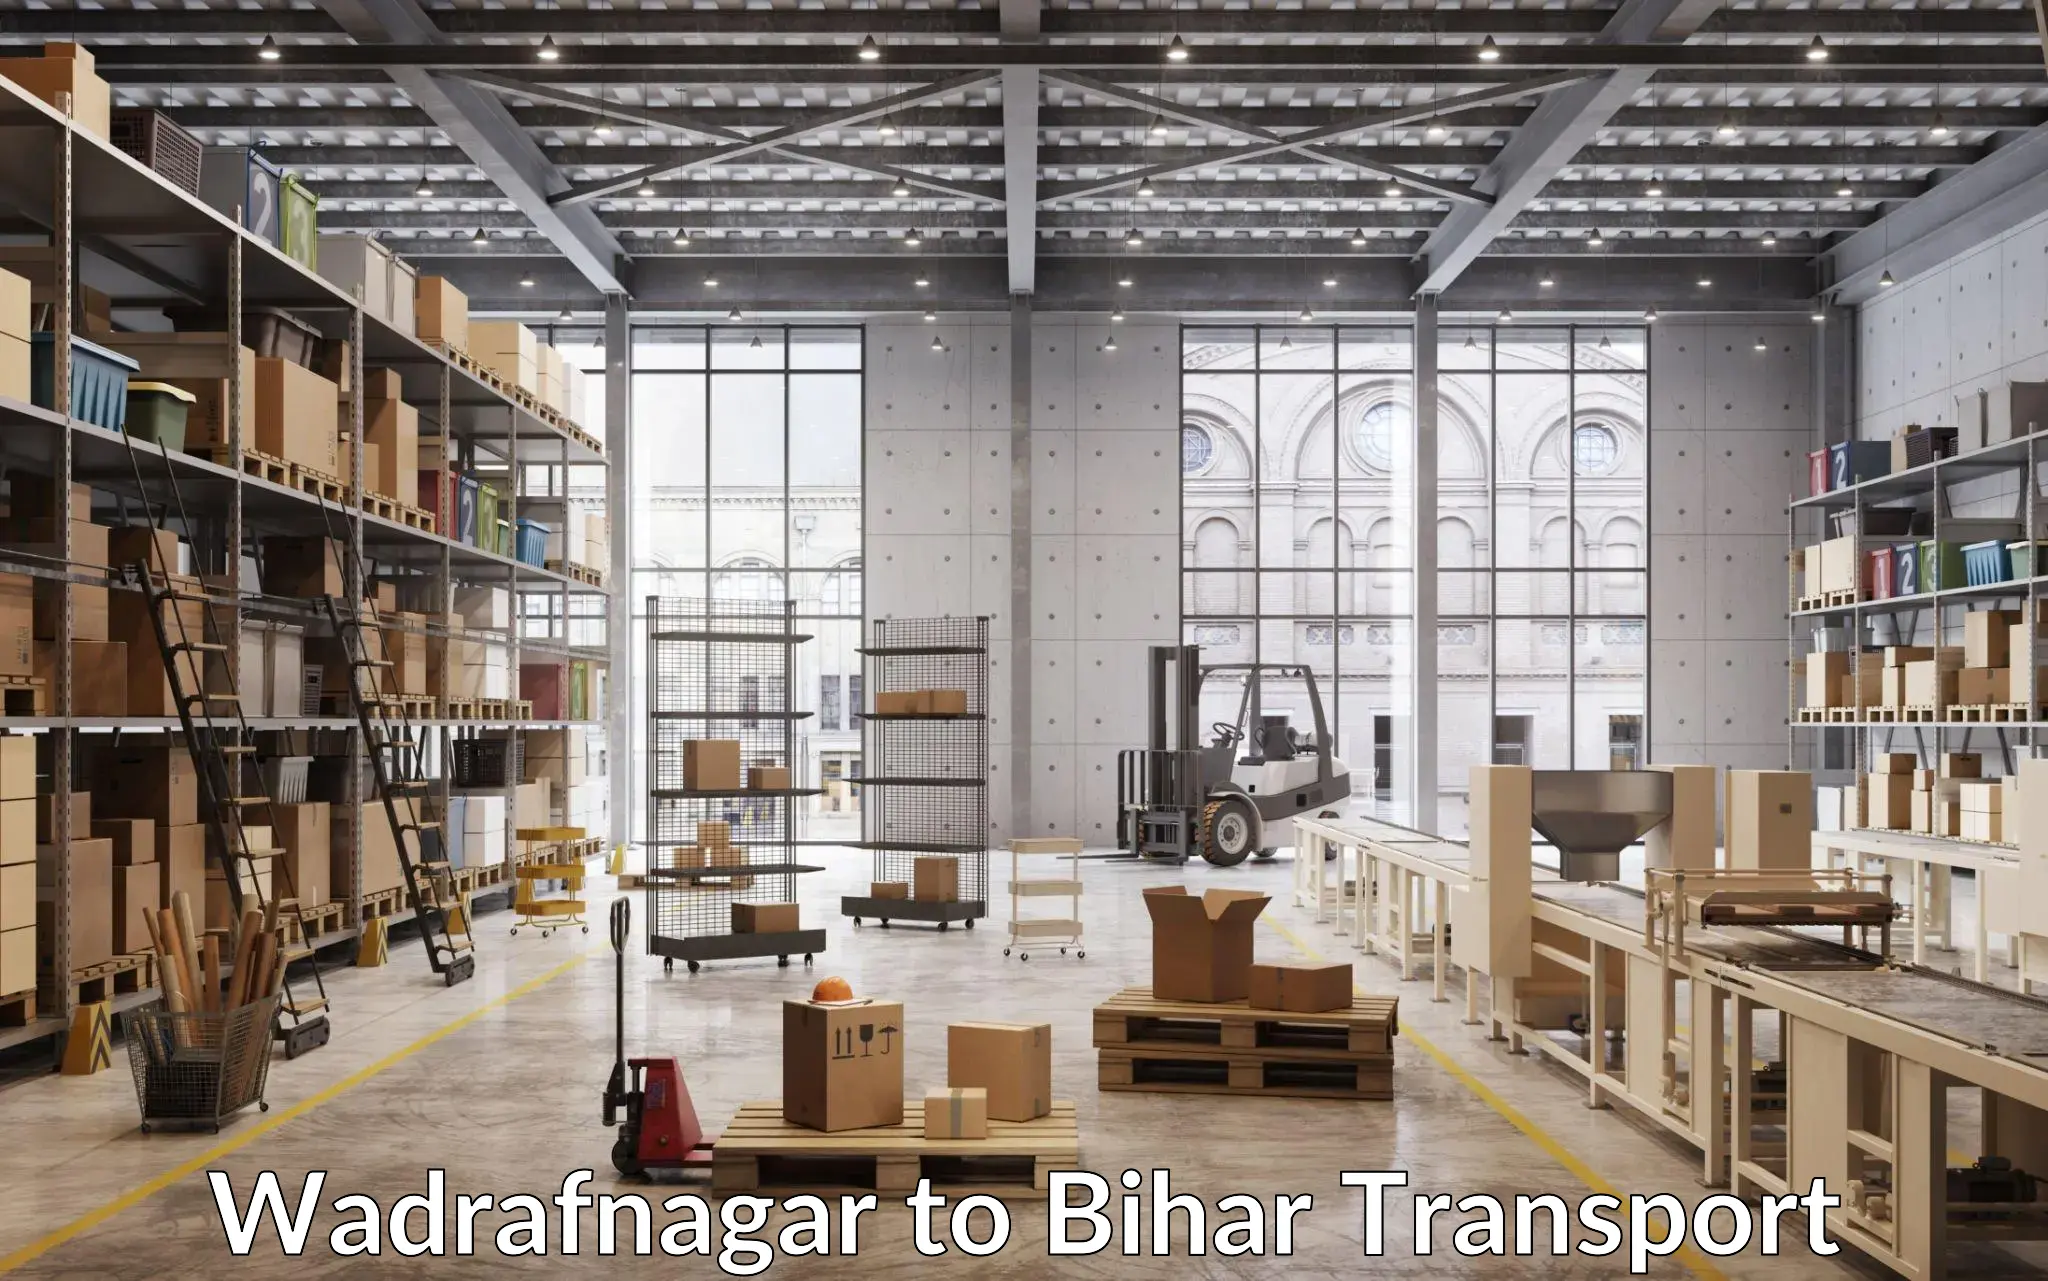 Daily parcel service transport Wadrafnagar to Bikramganj